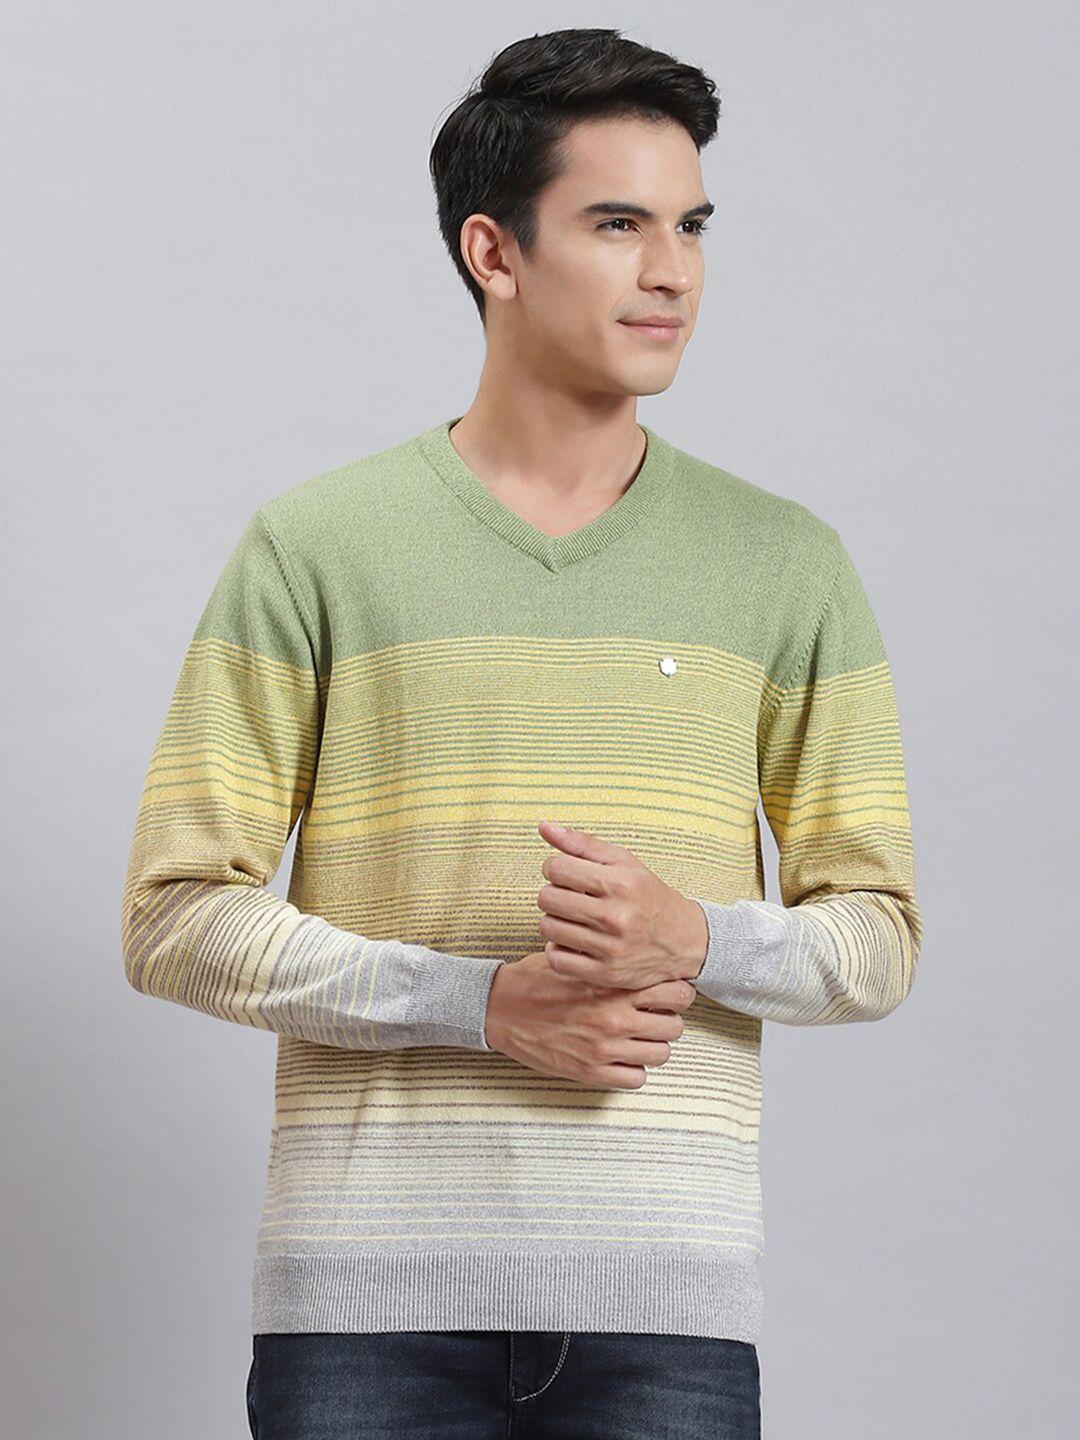 monte carlo striped v-neck cotton pullover